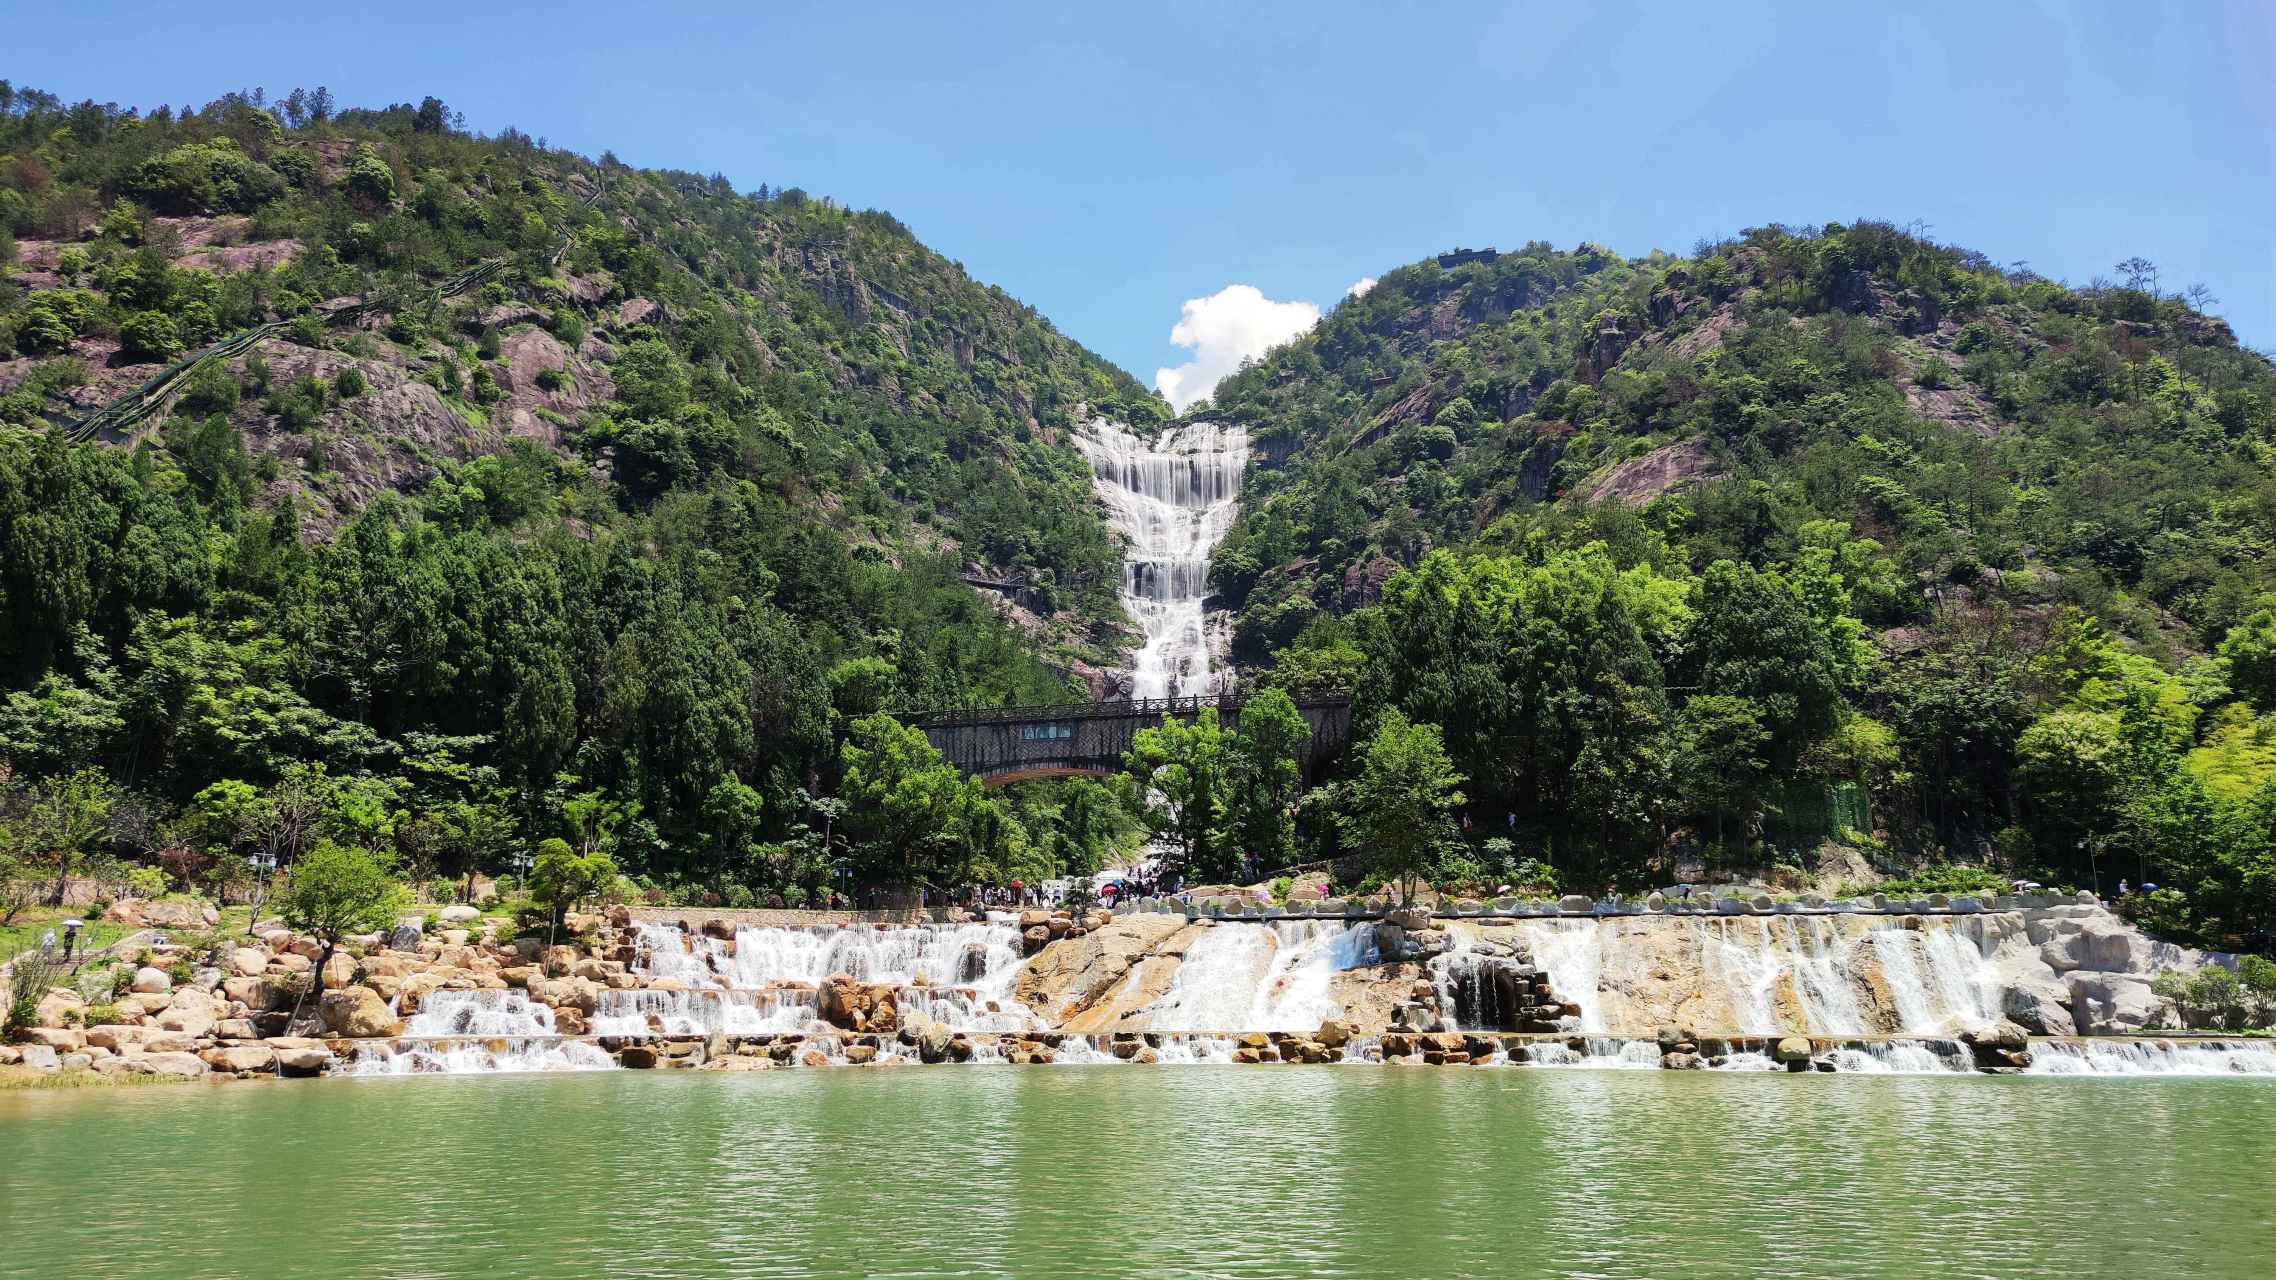 在浙江省有一座名为天台山大瀑布的景区,它在东晋时期因大文豪孙绰的